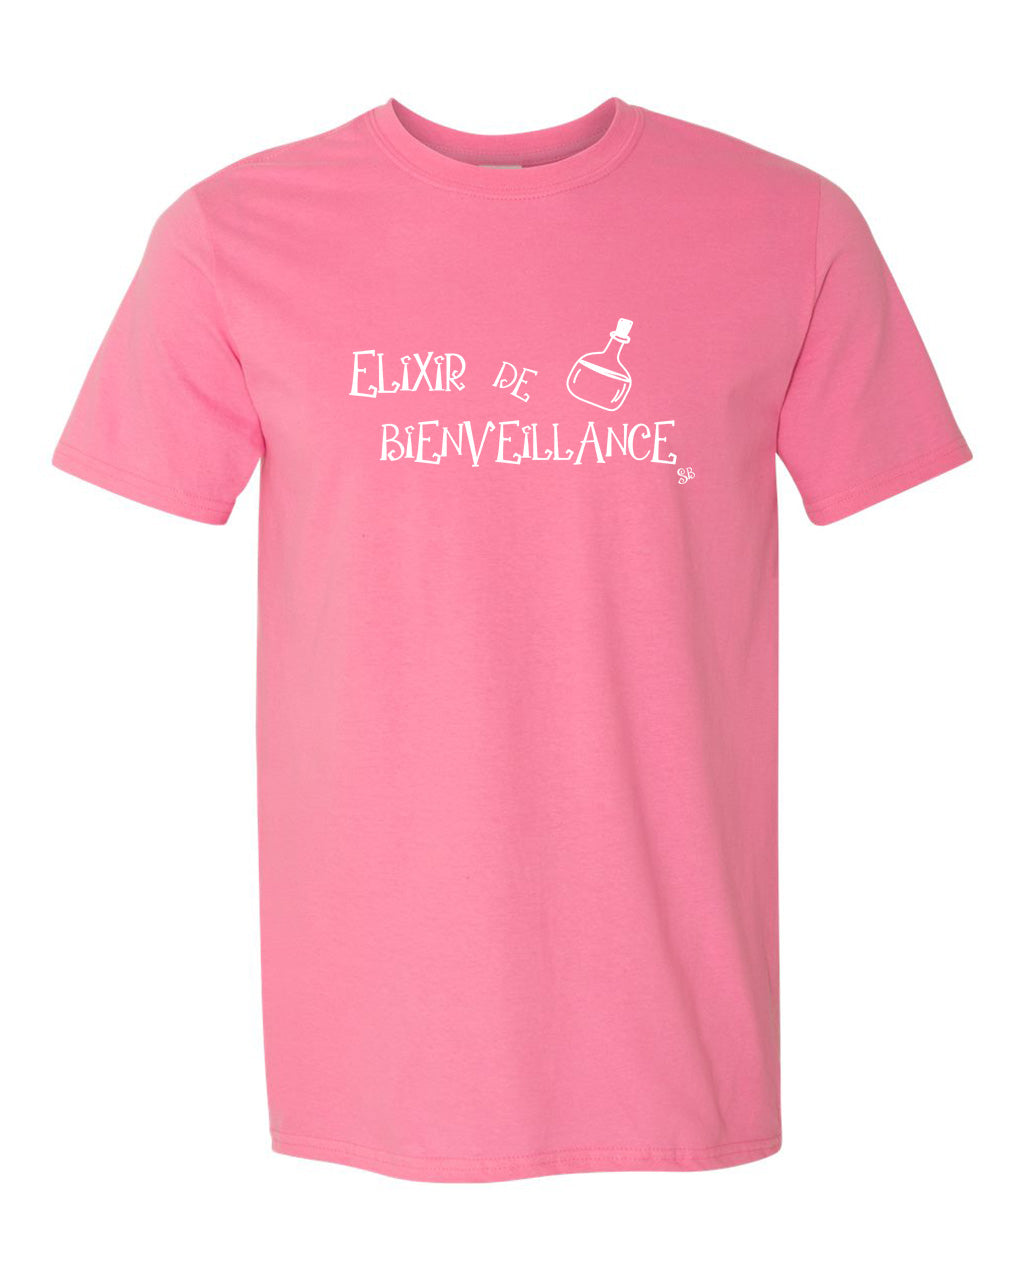 T-shirt - Elixir de bienveillance